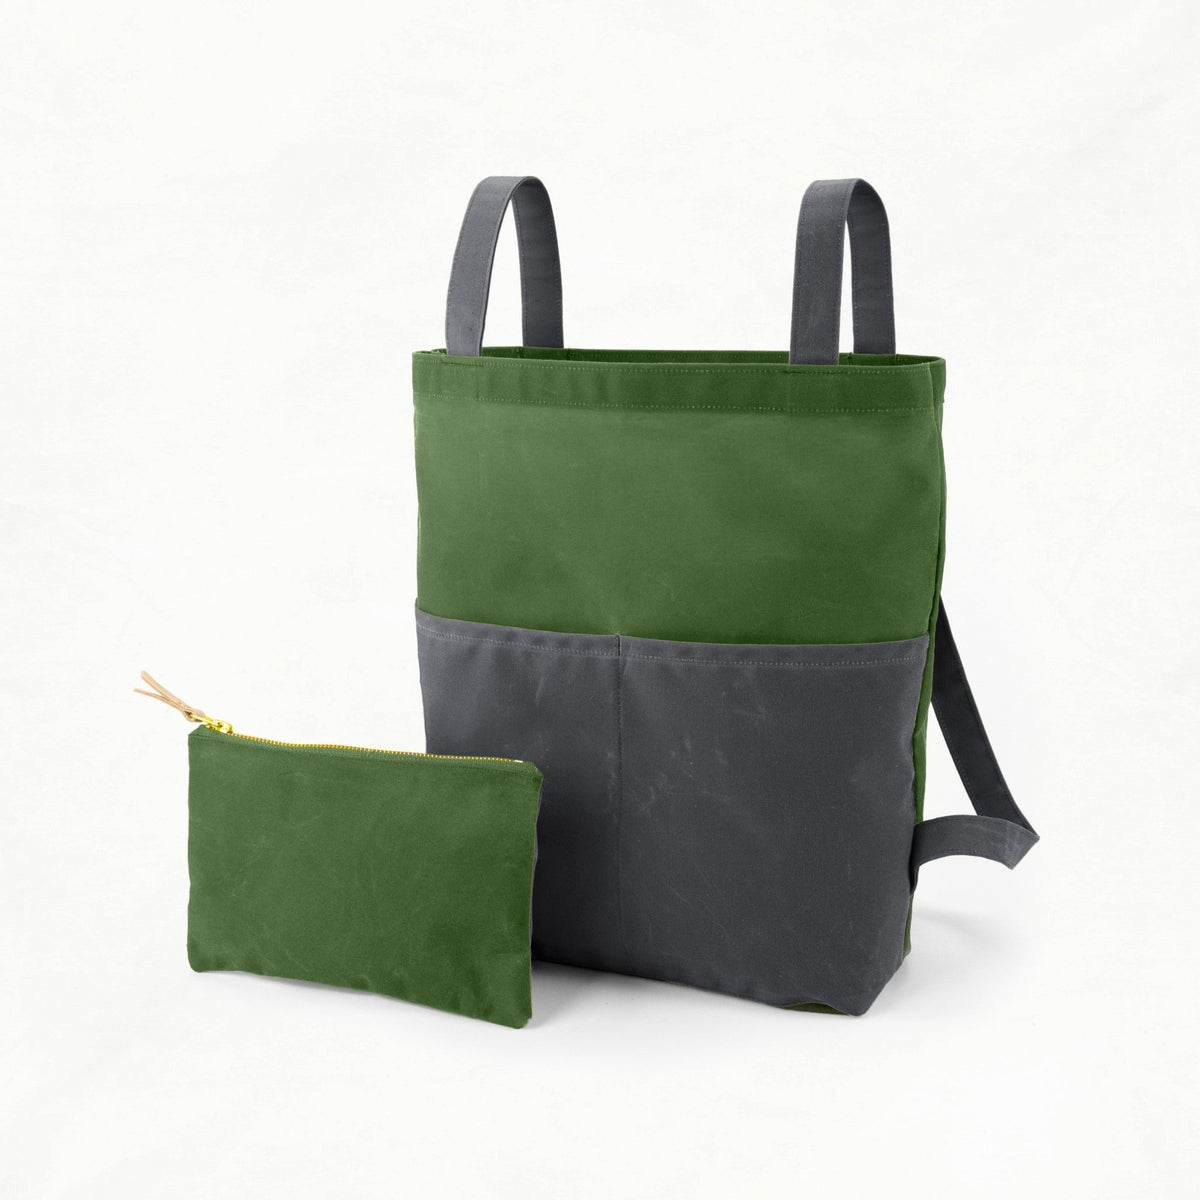 Belmont - Spring Green Bag Maker Kit - BEL - SPRING - GRAY - Maker Kit - Klum House